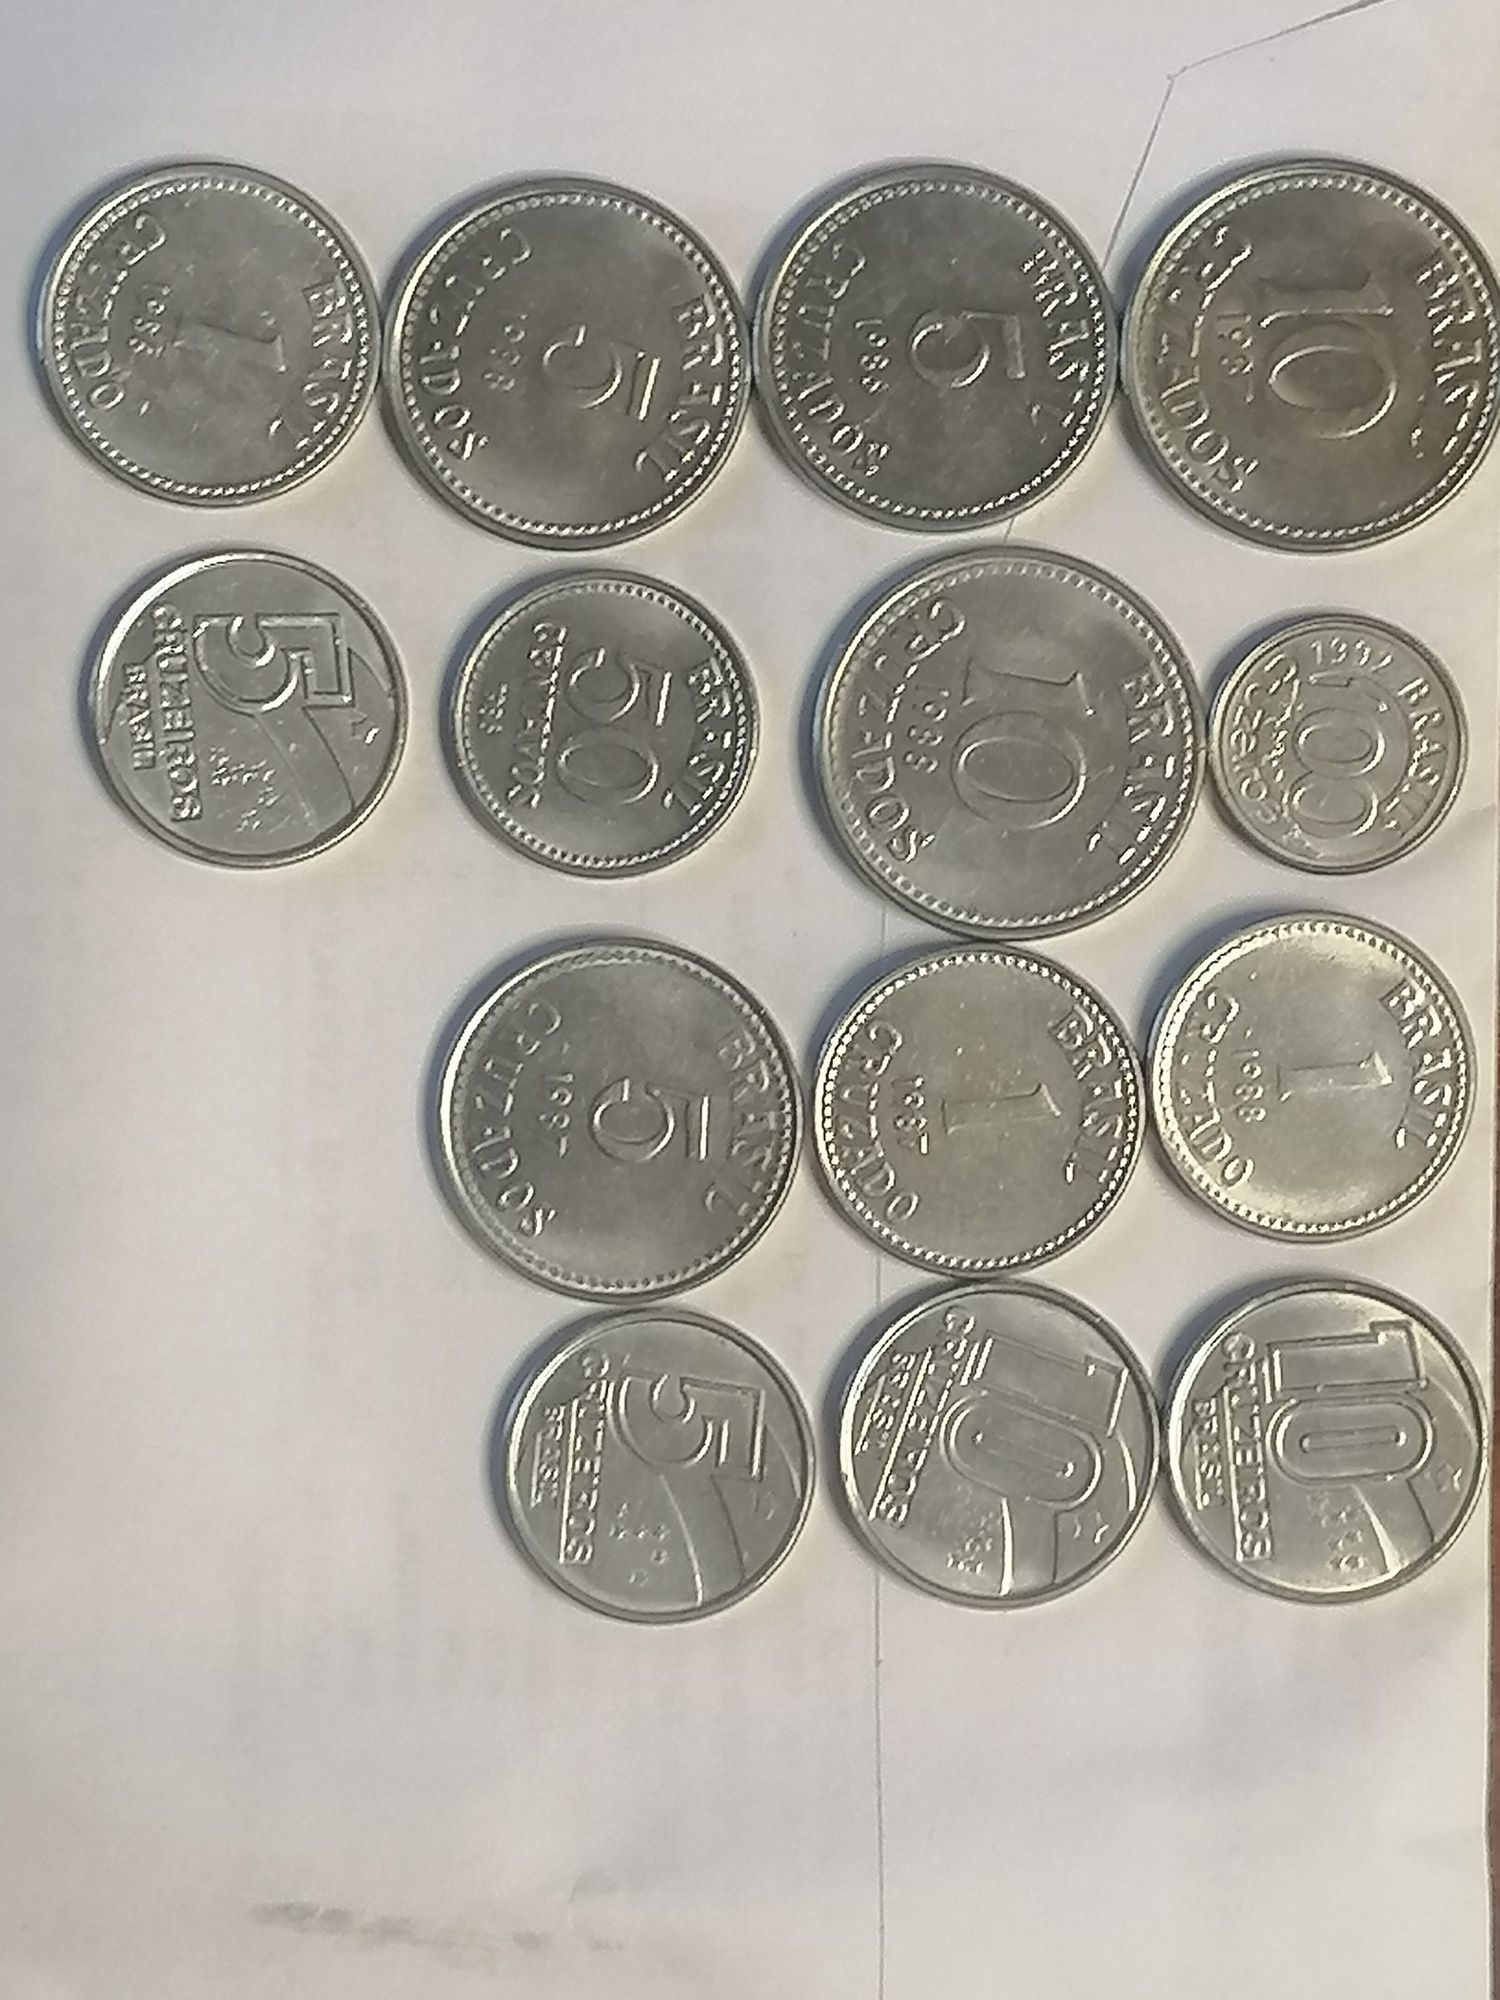 14 moedas do Brasil todas diferentes